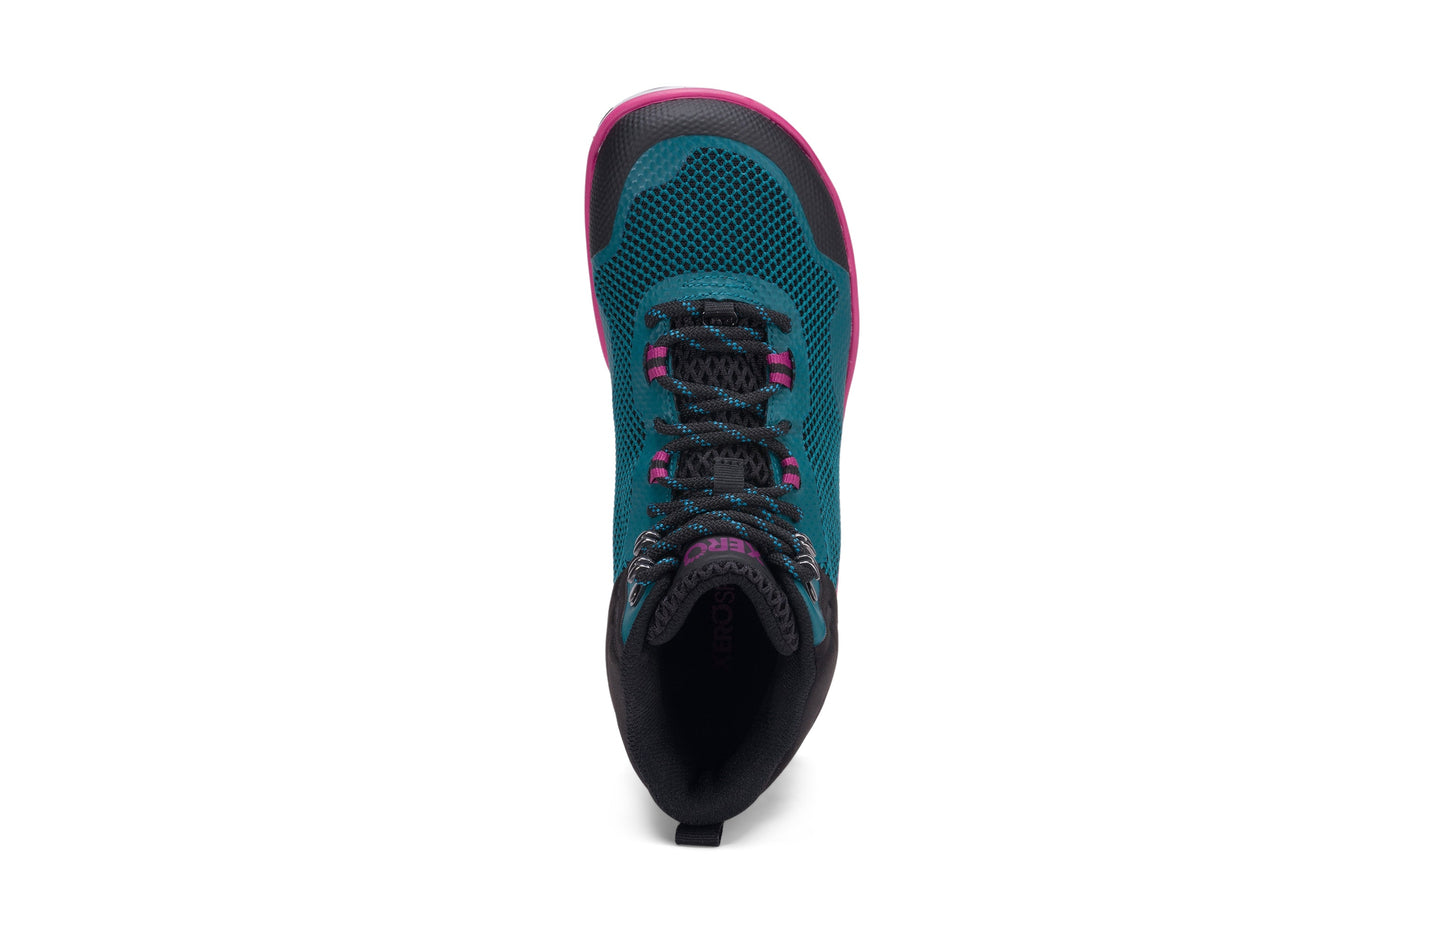 Xero Shoes Scrambler Mid Womens barfods lette vandrestøvler til kvinder i farven deep lake / fuschia, top